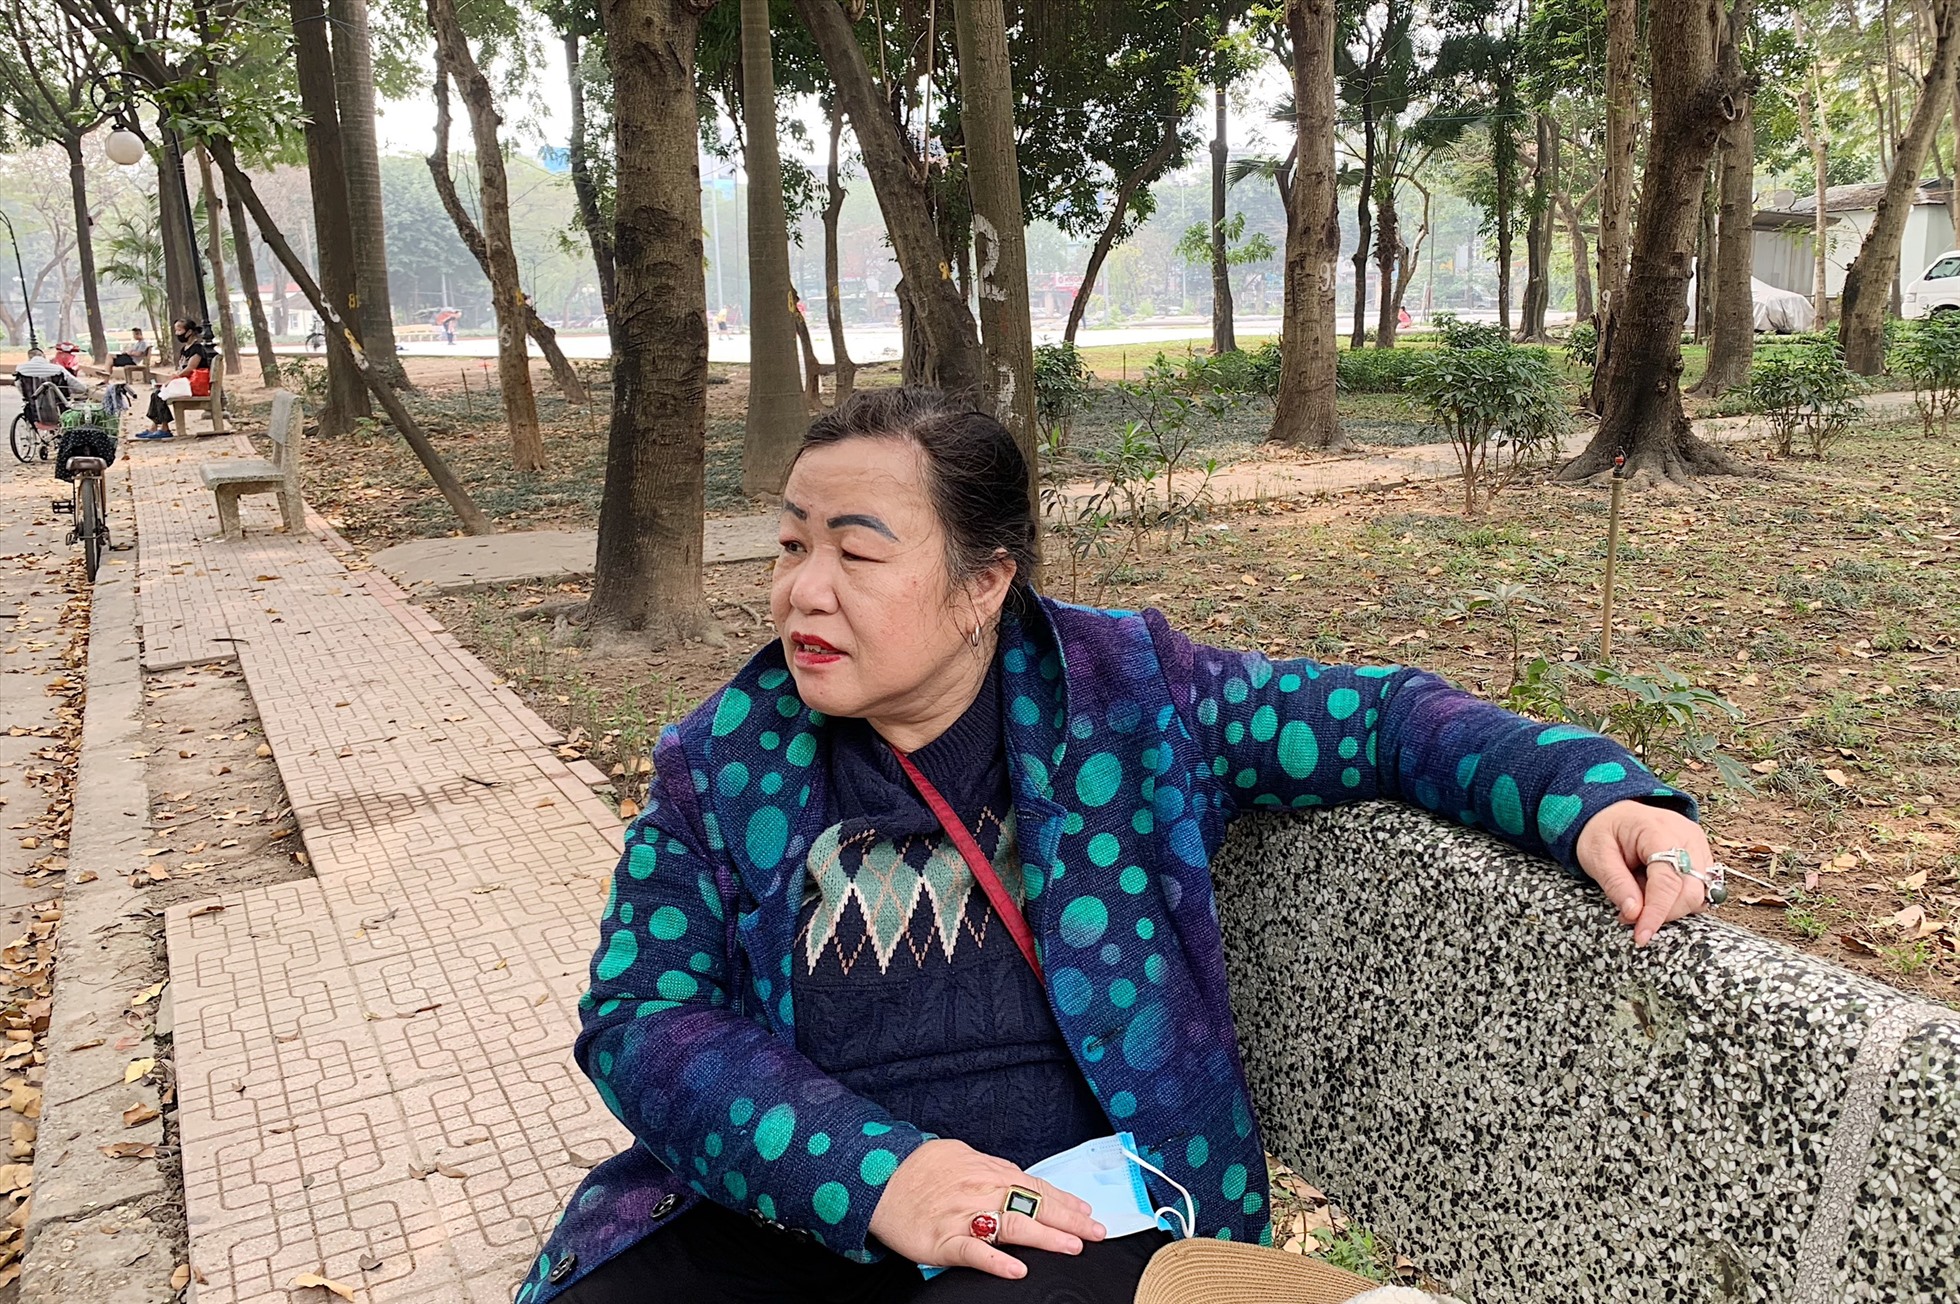 Bà Phạm Thúy Hằng chia sẻ về việc xuống cấp tại Công viên Tuổi trẻ. Ảnh: Thu Hiền